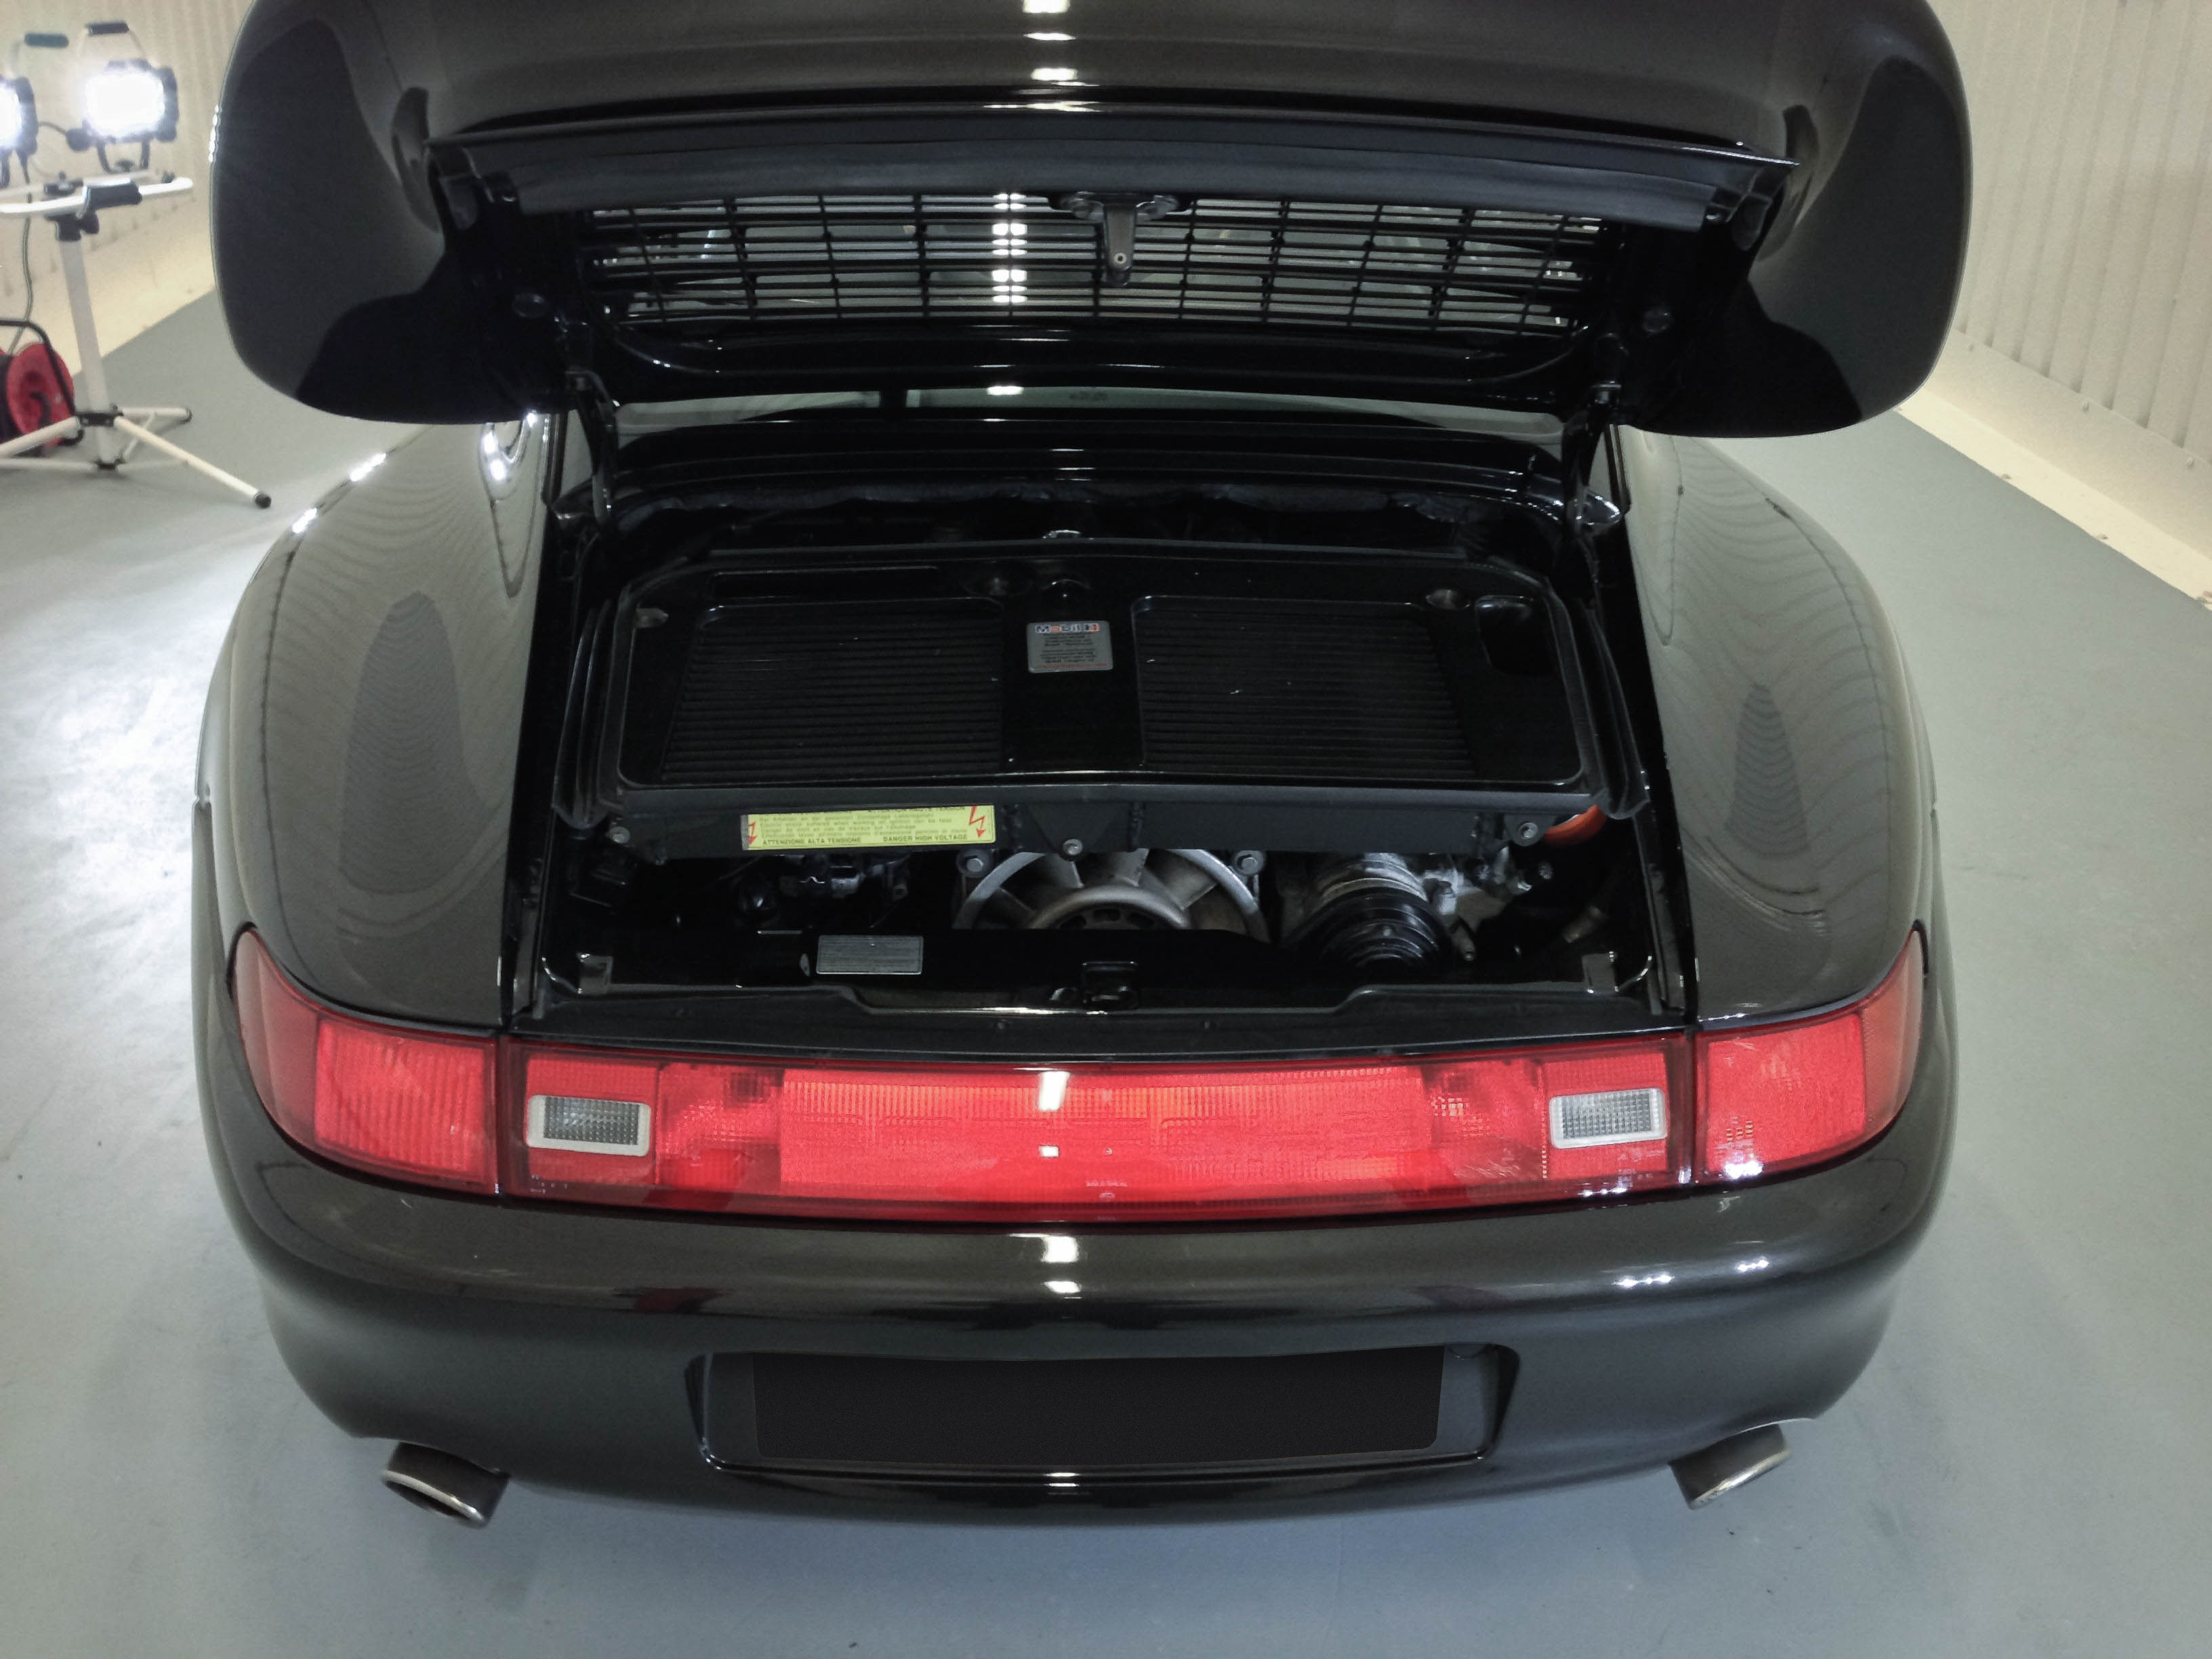 Porsche 911 Turbo – Clean engine